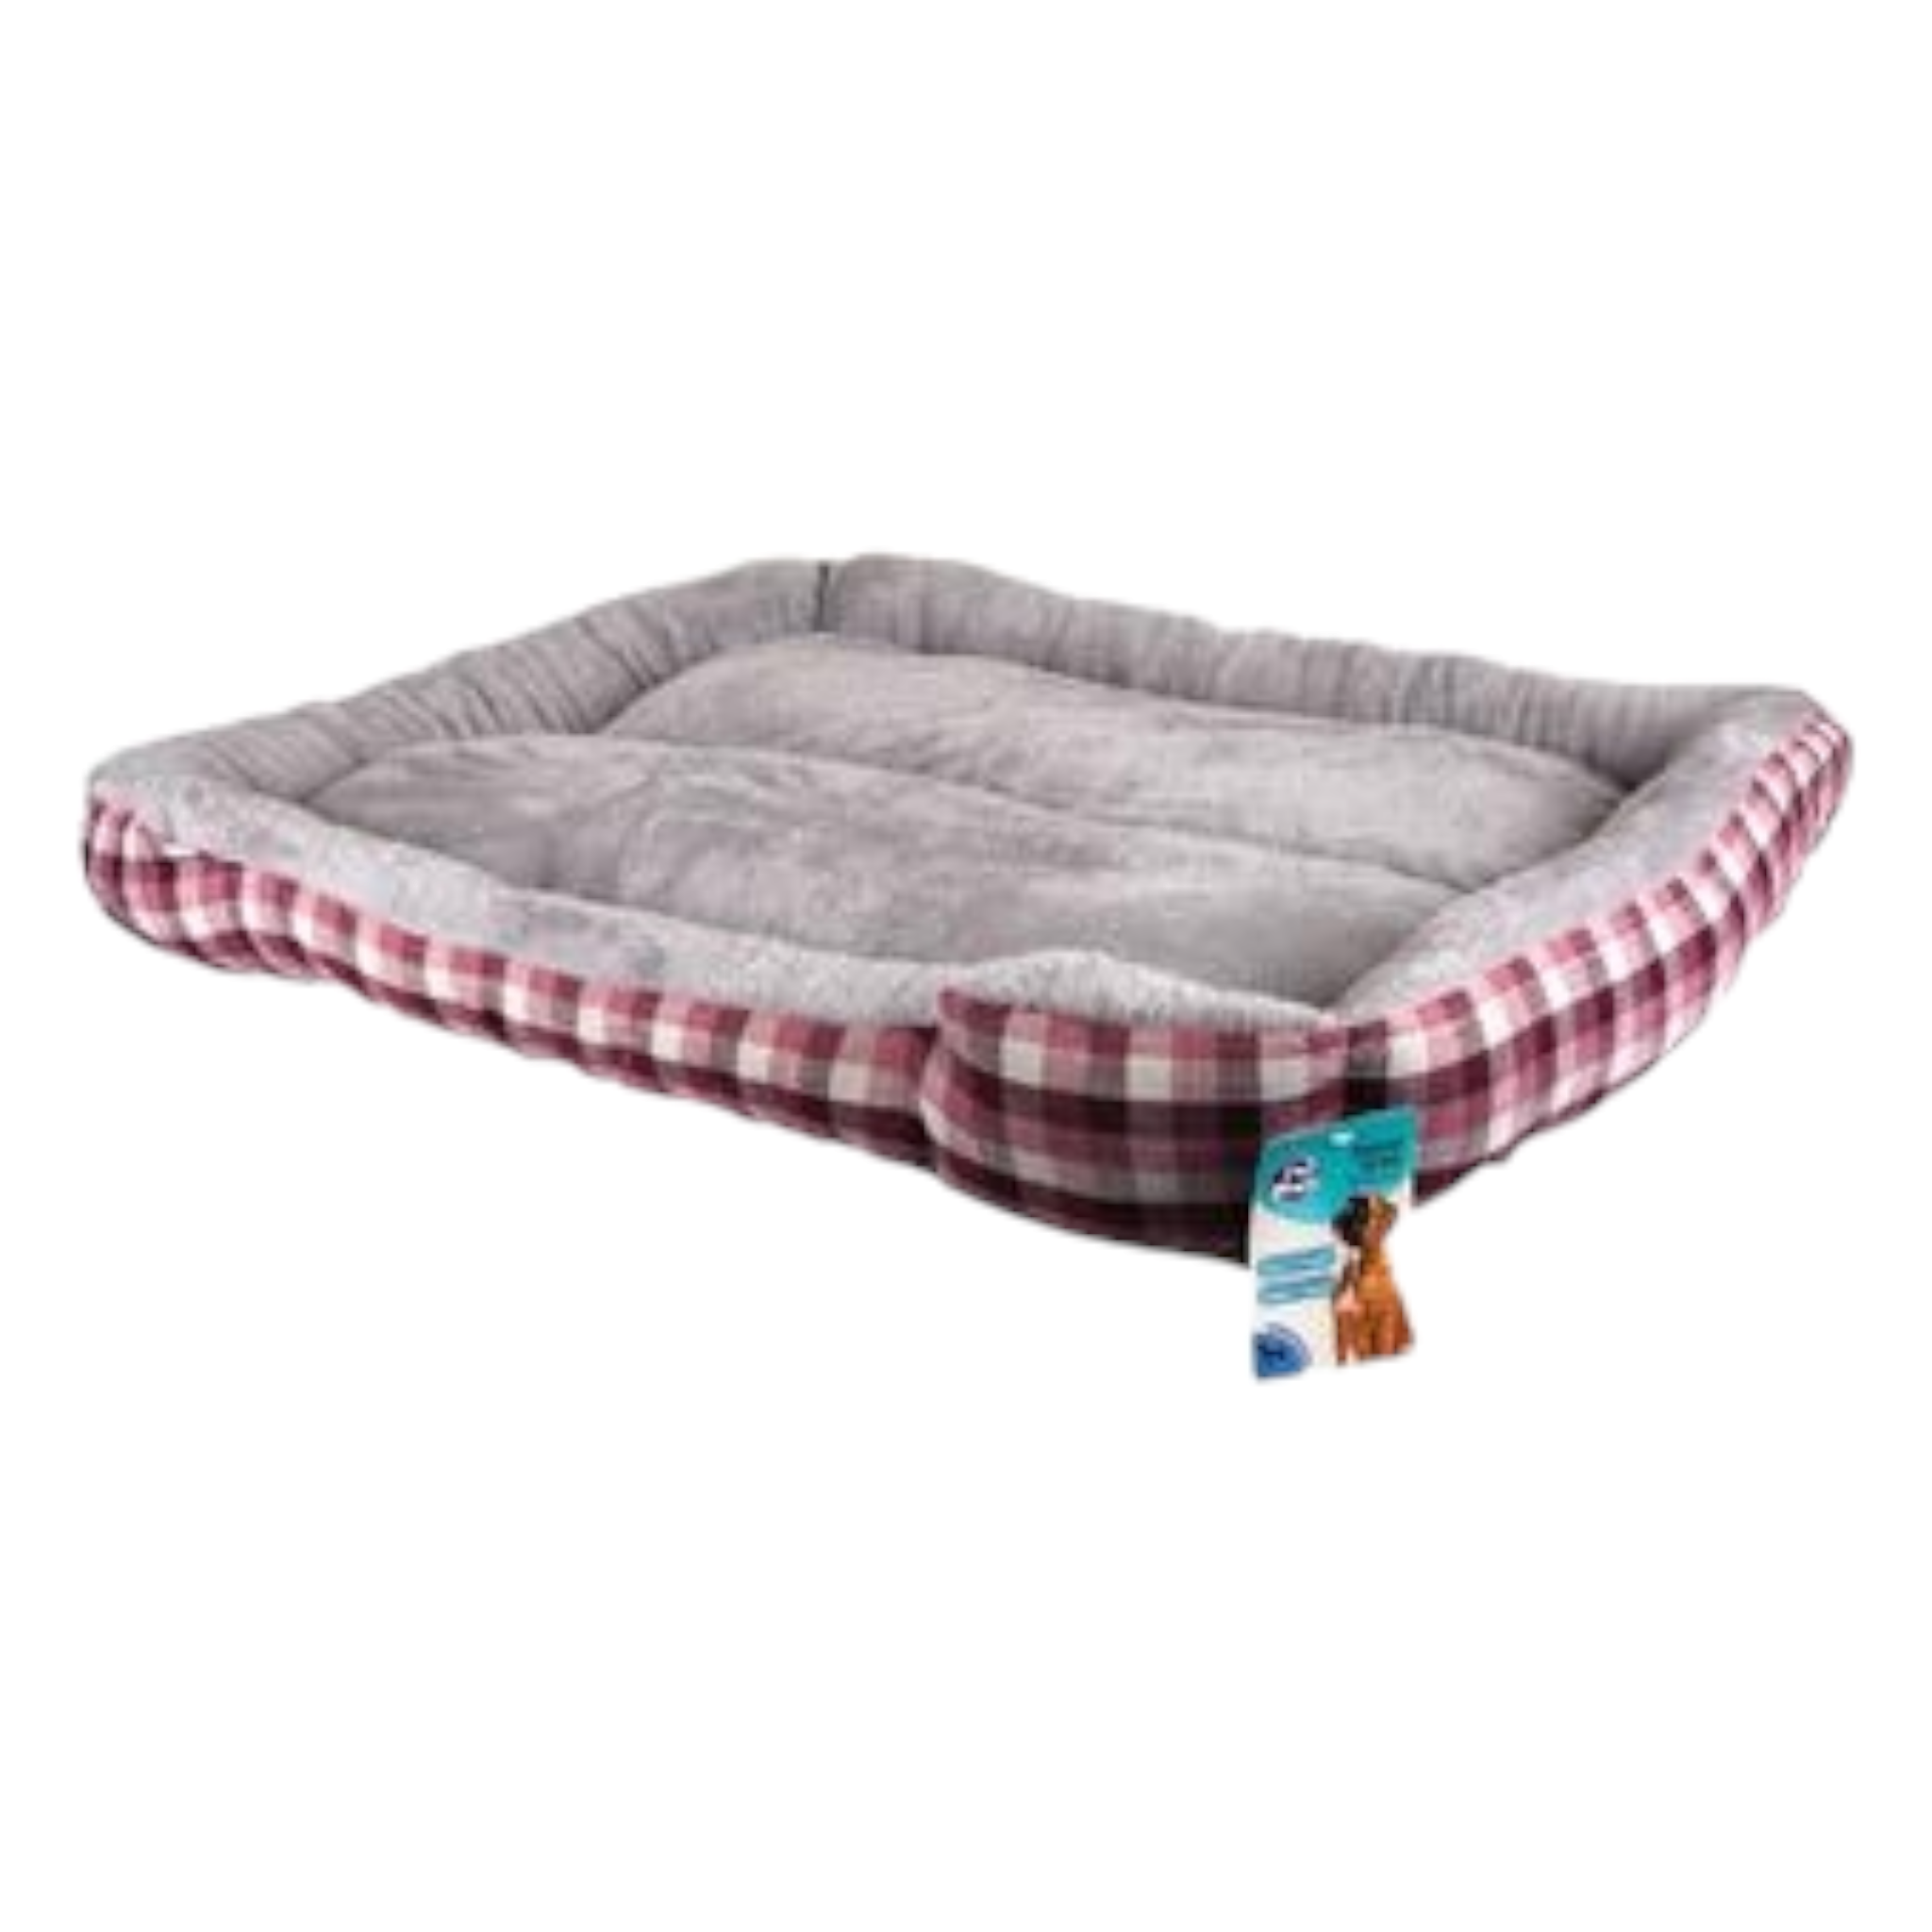 Pet Fur Bed Rectangle 100x90x18cm each